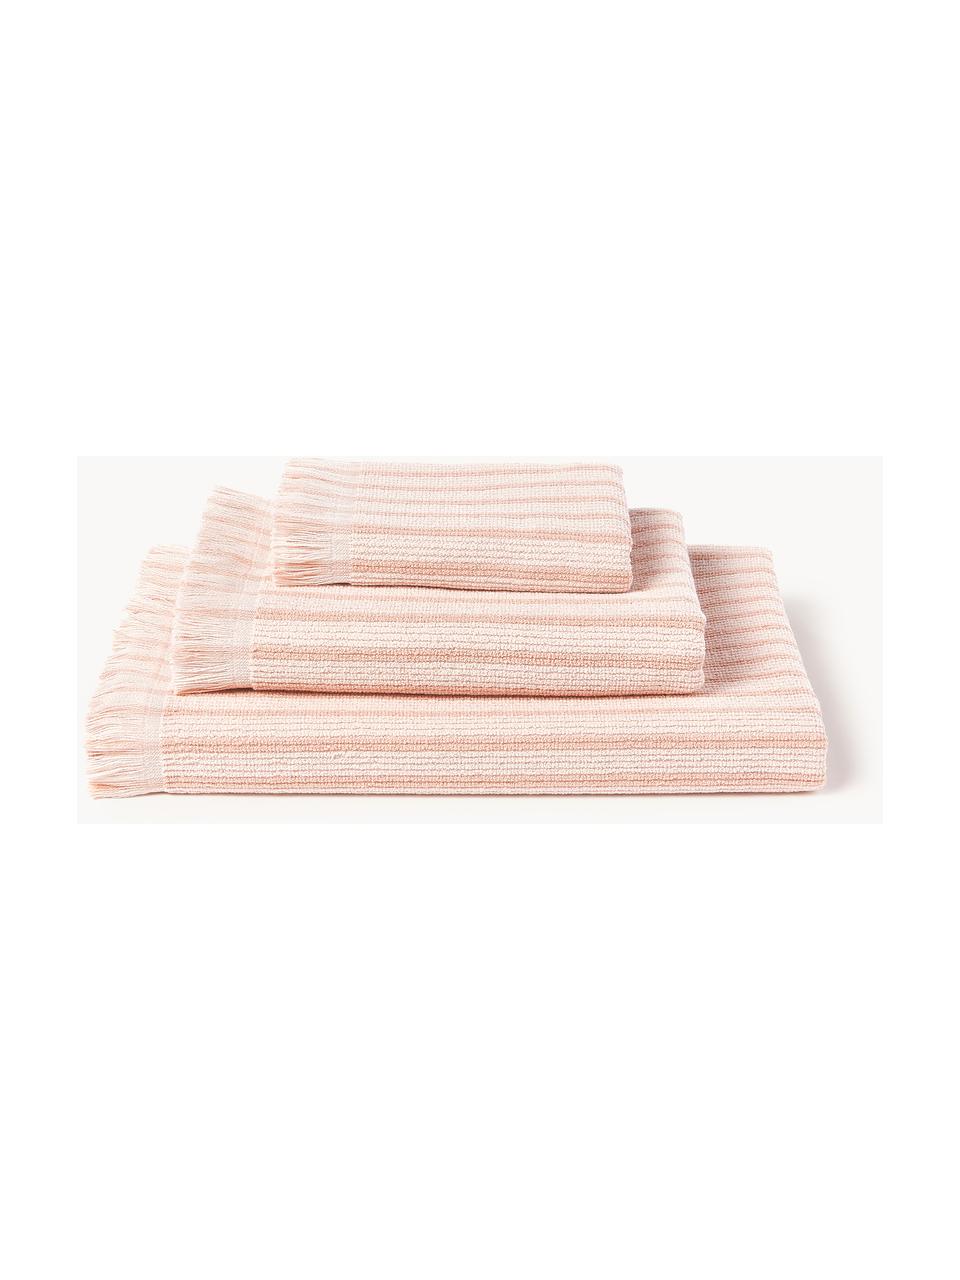 Sada ručníků Irma, různé velikosti sady, Světle růžová, 4dílná sada (ručník a osuška)